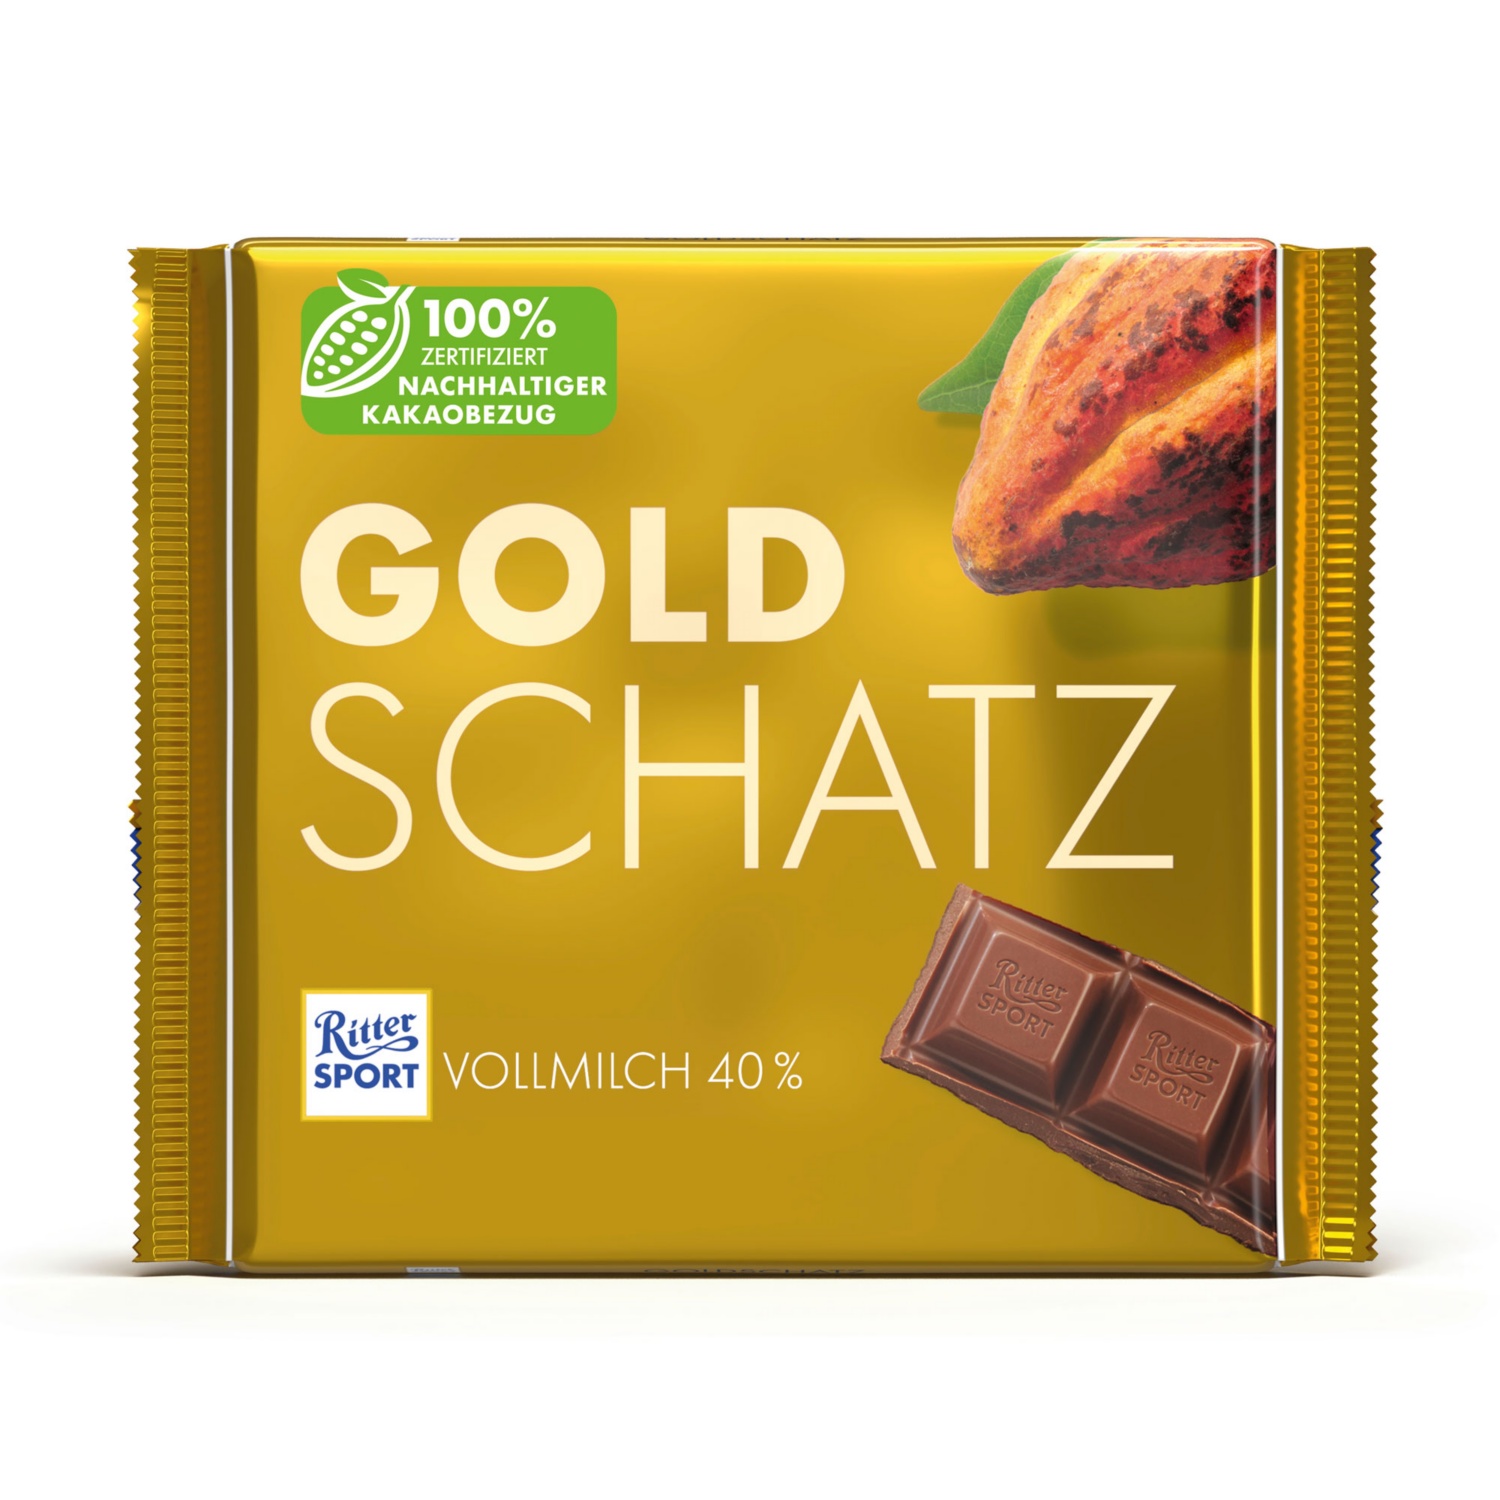 RITTERSPORT Schokolade, Goldschatz